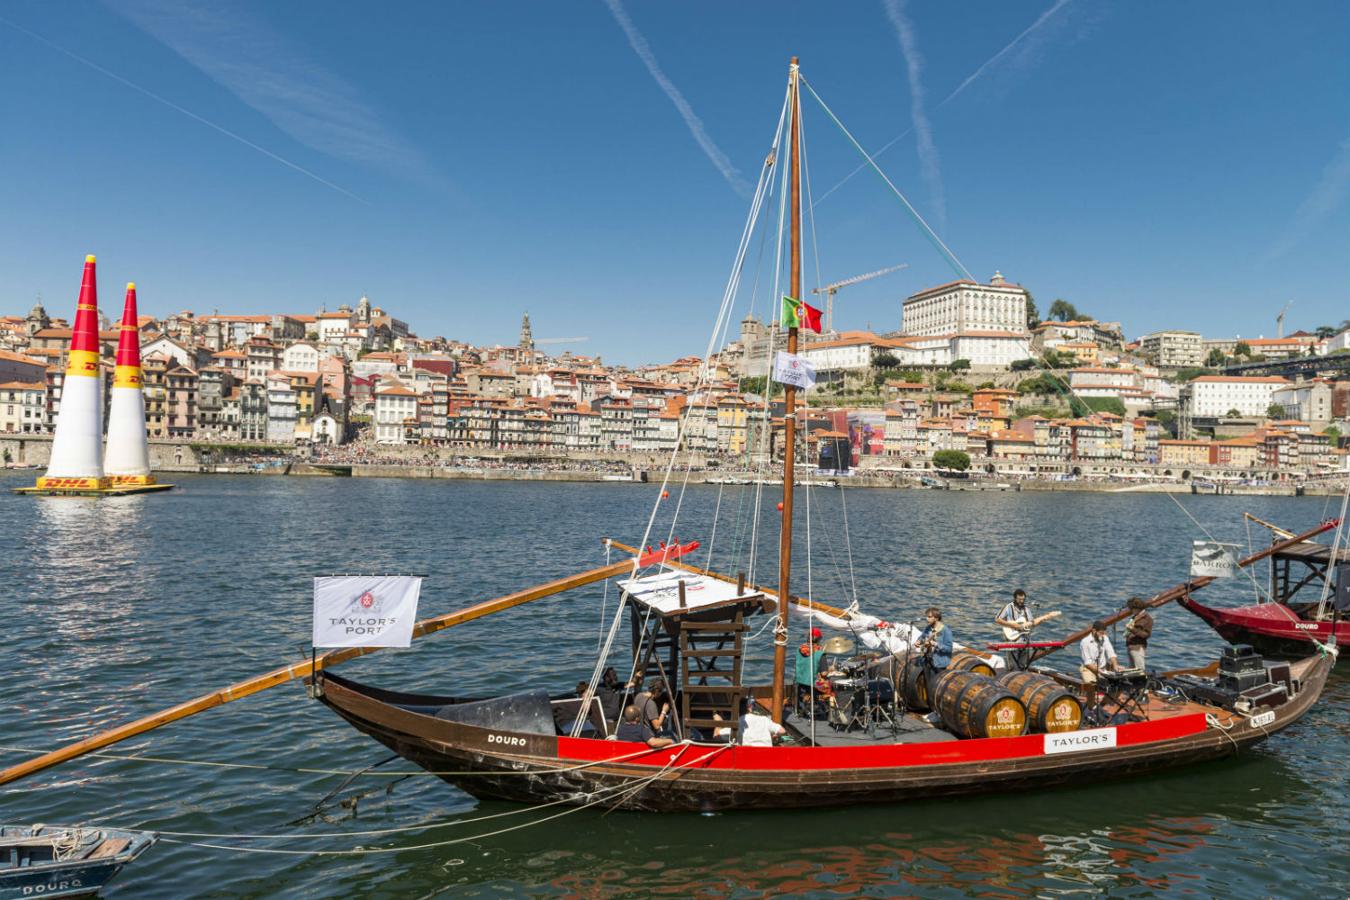 La banda de música Capitao Fausto amenizó desde un barco los tiempos muertos de la Red Bull Air Race a los aficionados que acudieron a la cita en Oporto.